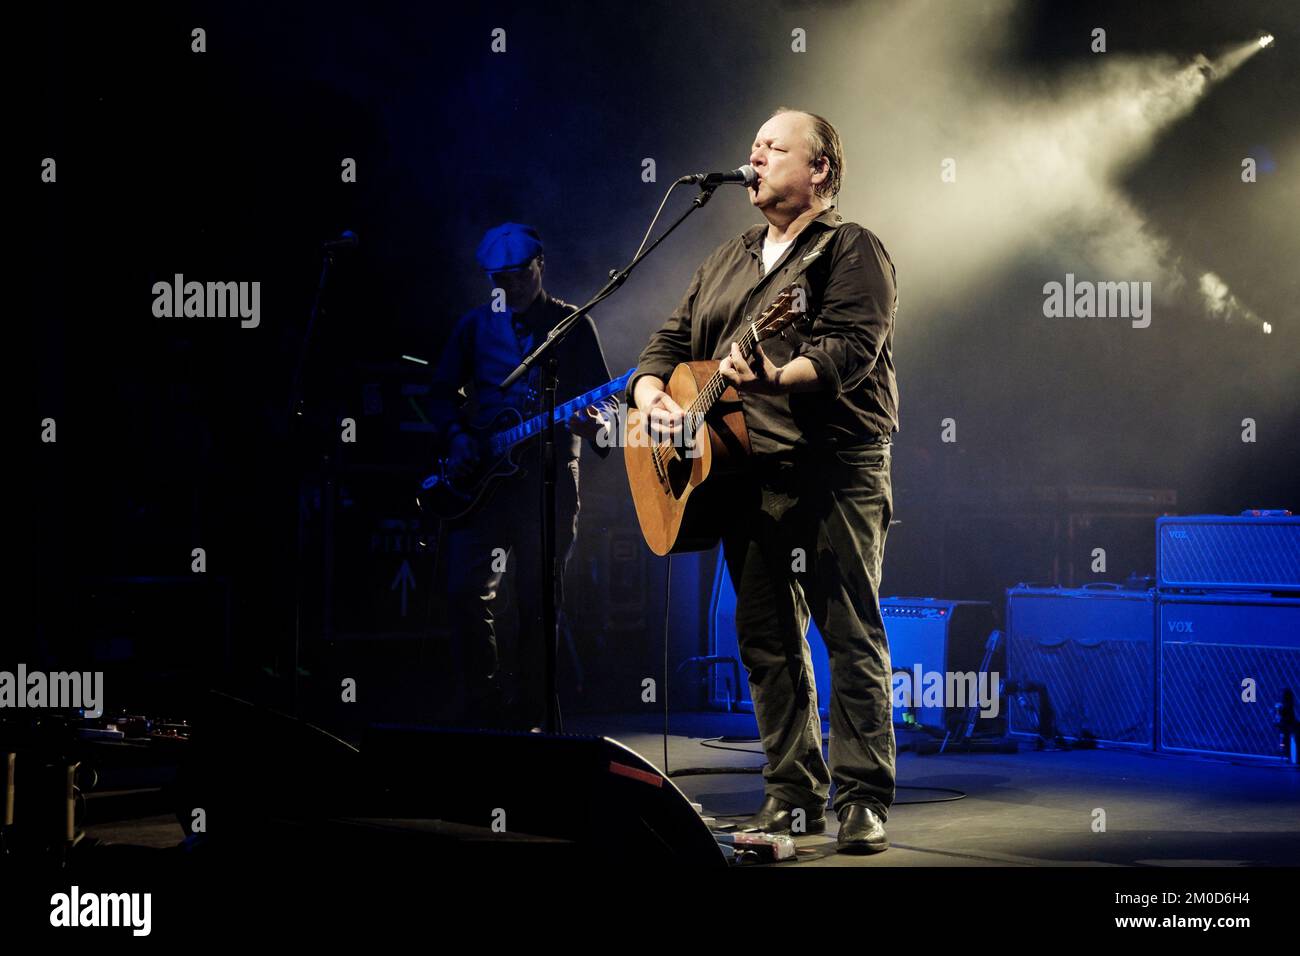 I Pixies live in concerto a Stoccolma - Joey Santiago (chitarra) e Frank Black (alias Black Francis), cantante e chitarrista dei Pixies, dal vivo sul palco durante un concerto del loro tour "Beneath the Eyrie" al Cirkus di Stoccolma, Svezia il 2019 settembre (versione a colori) Foto Stock